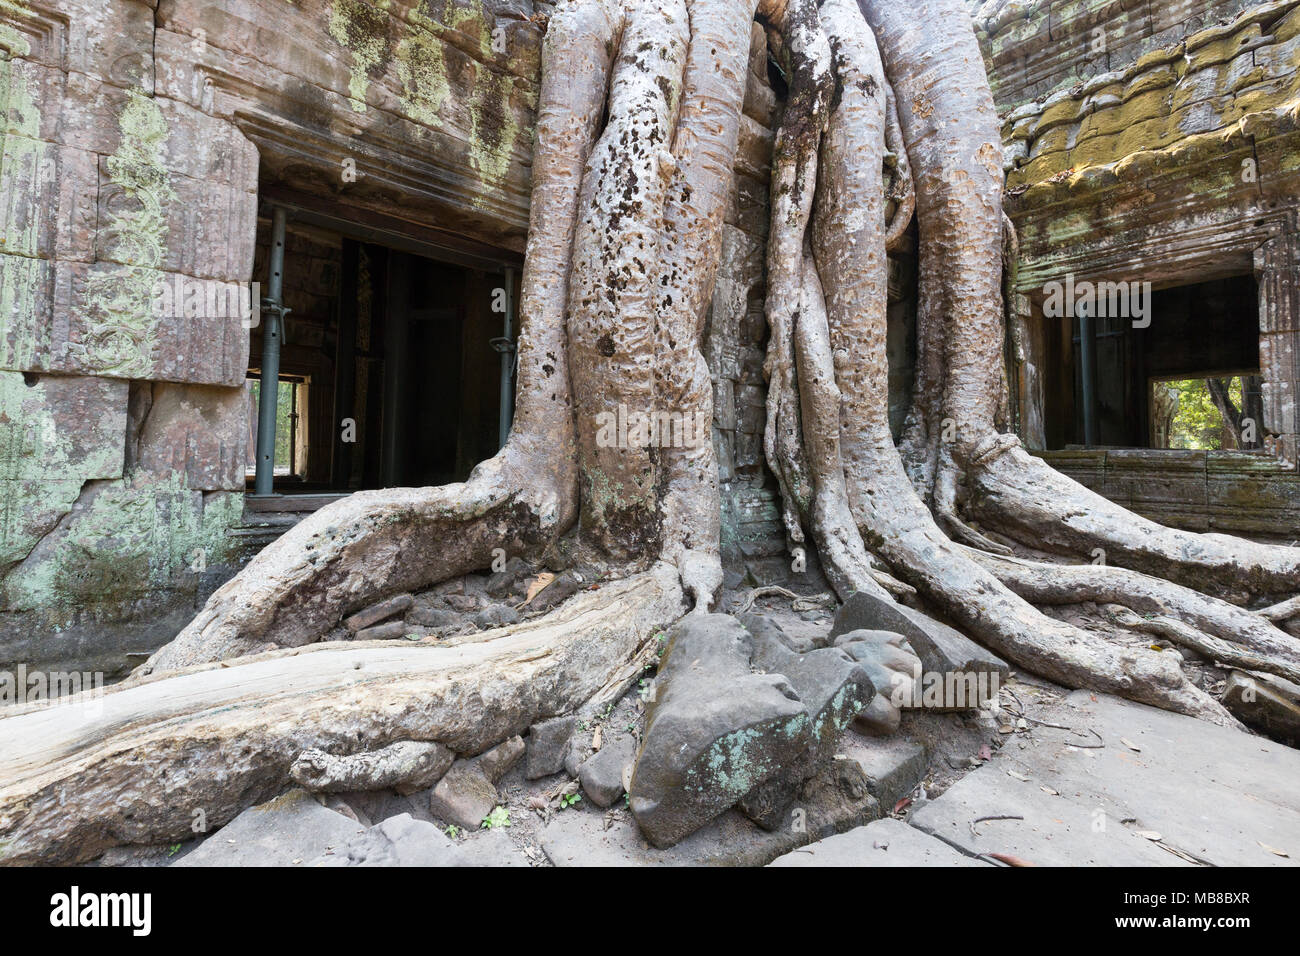 Baumwurzeln bei Ta Prohm, 12. Jahrhundert ruiniert buddhistischen Tempel, Angkor Ort, Provinz Siem Reap, Kambodscha Asien (siehe auch Bild MB 8 von 9) Stockfoto